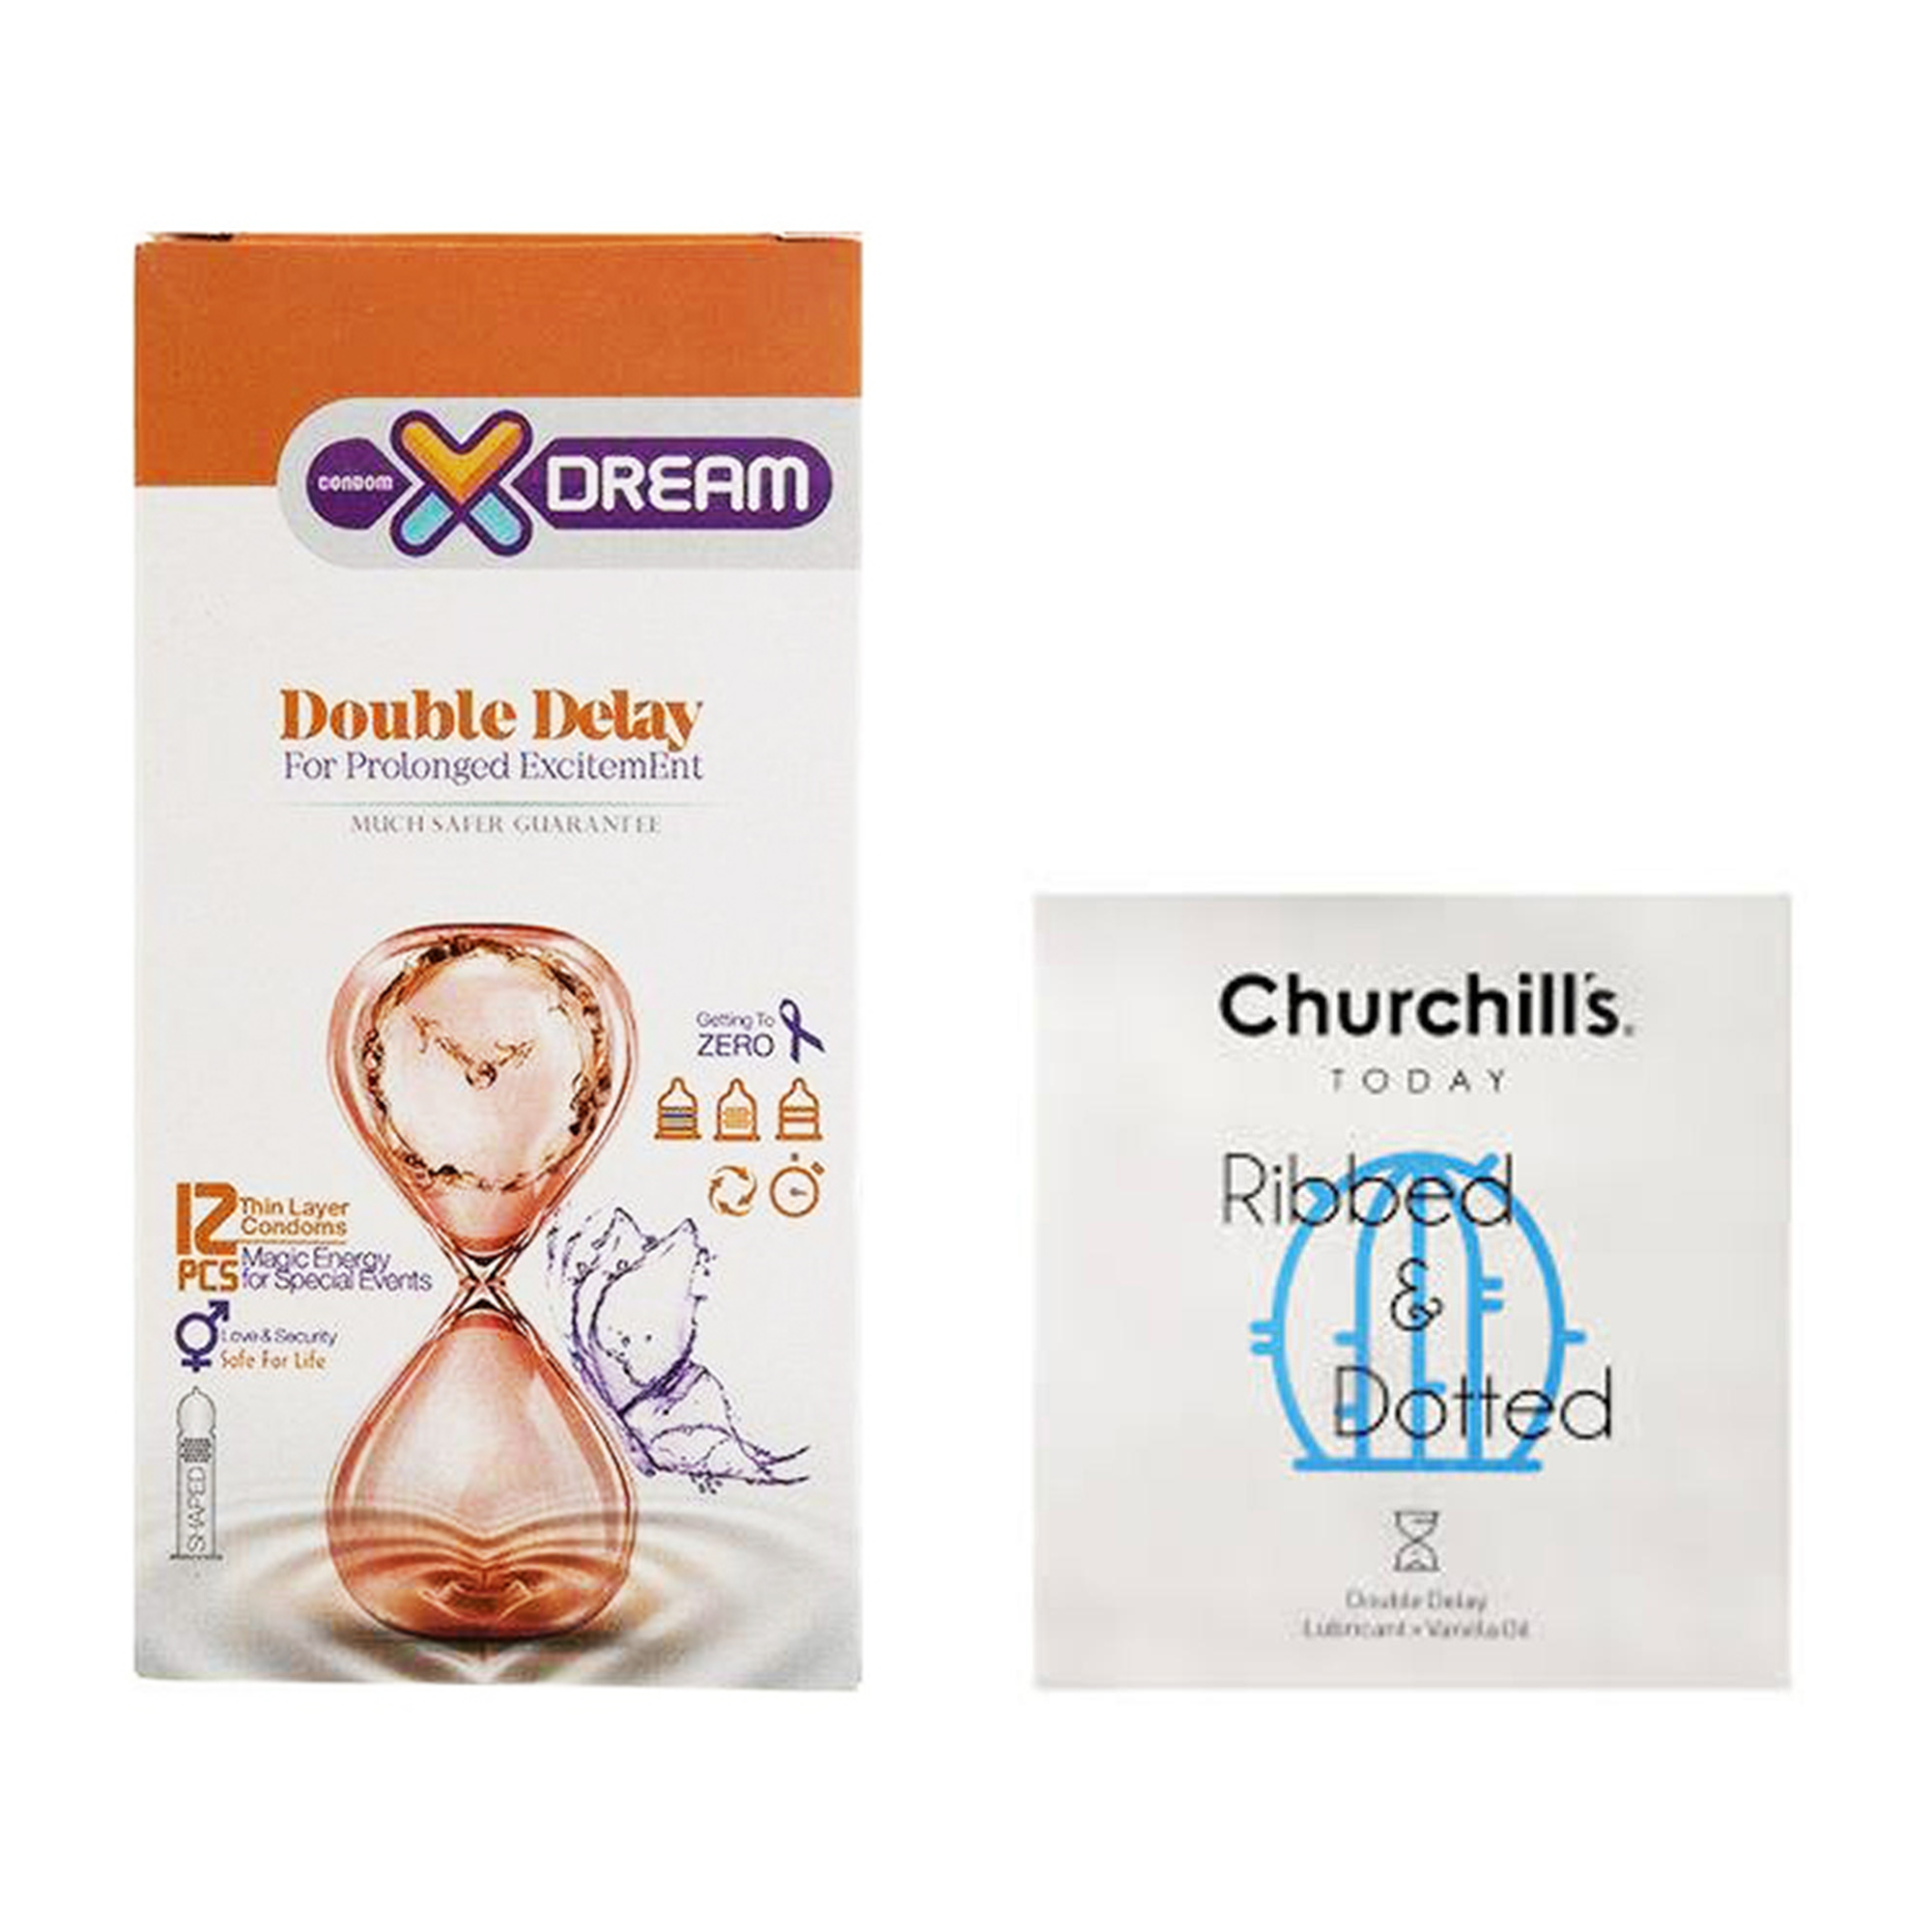 کاندوم چرچیلز مدل Ribbed and Dotted بسته 3 عددی به همراه کاندوم ایکس دریم مدل Double Delay بسته 12 عددی